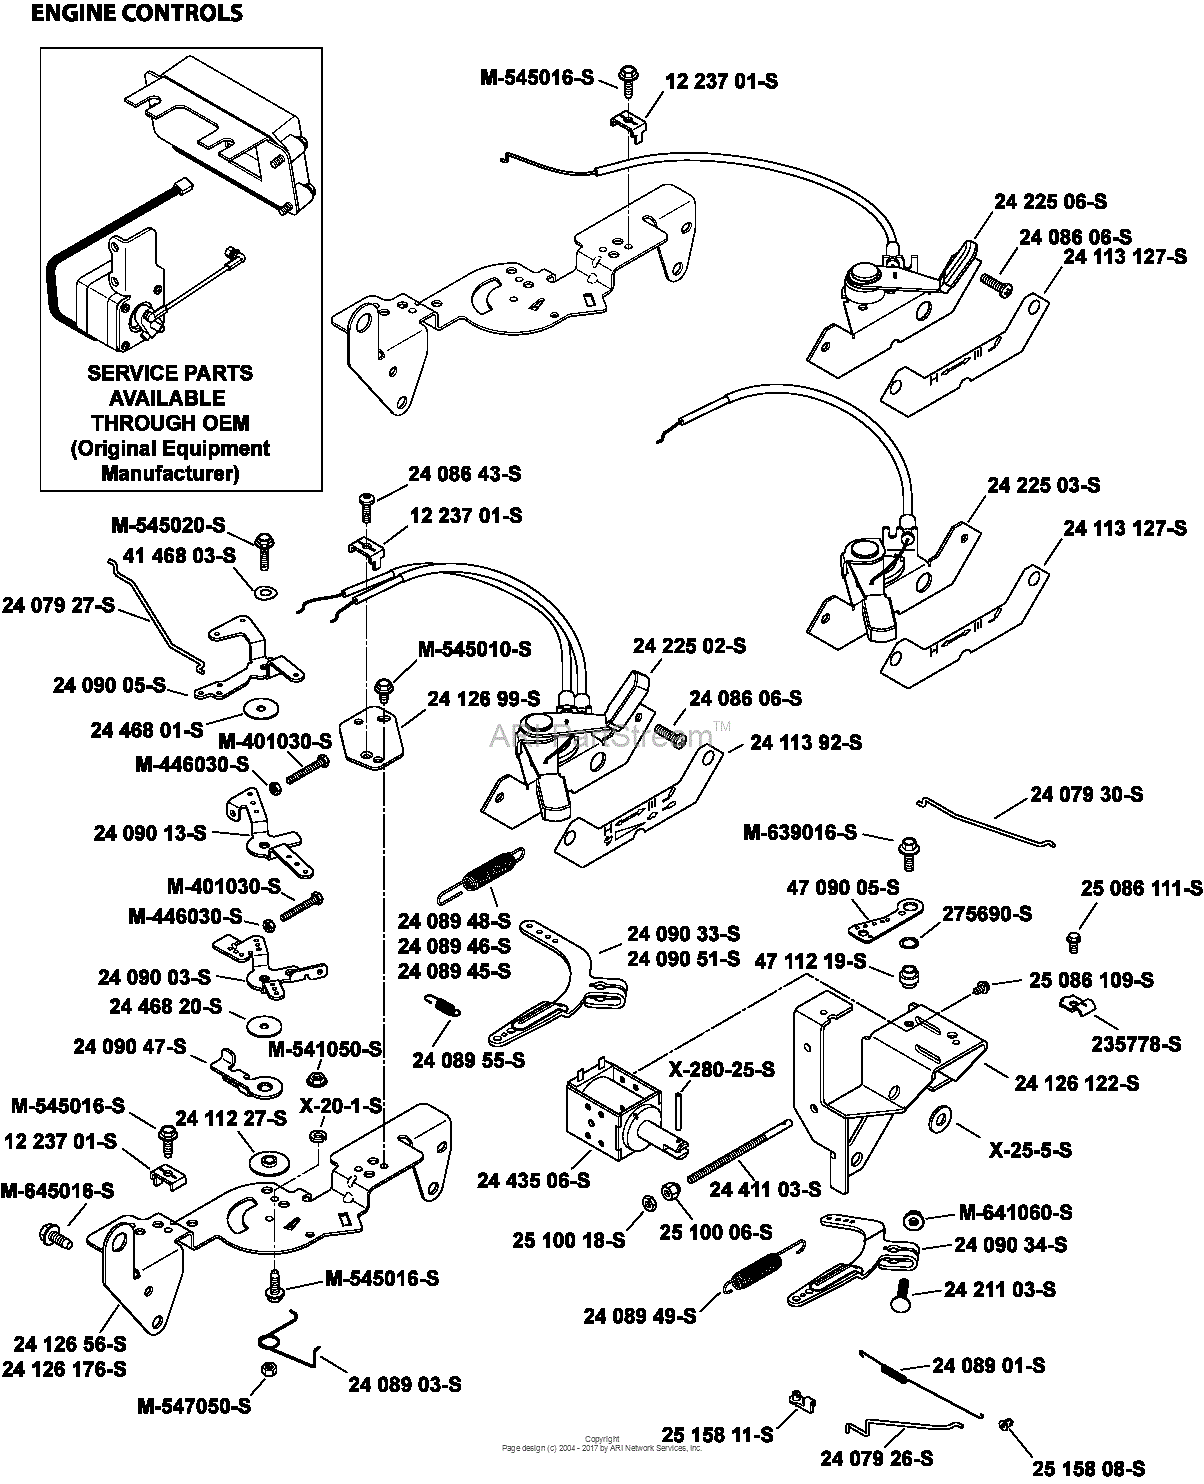 Kohler Engine Wiring Diagram from schematron.org